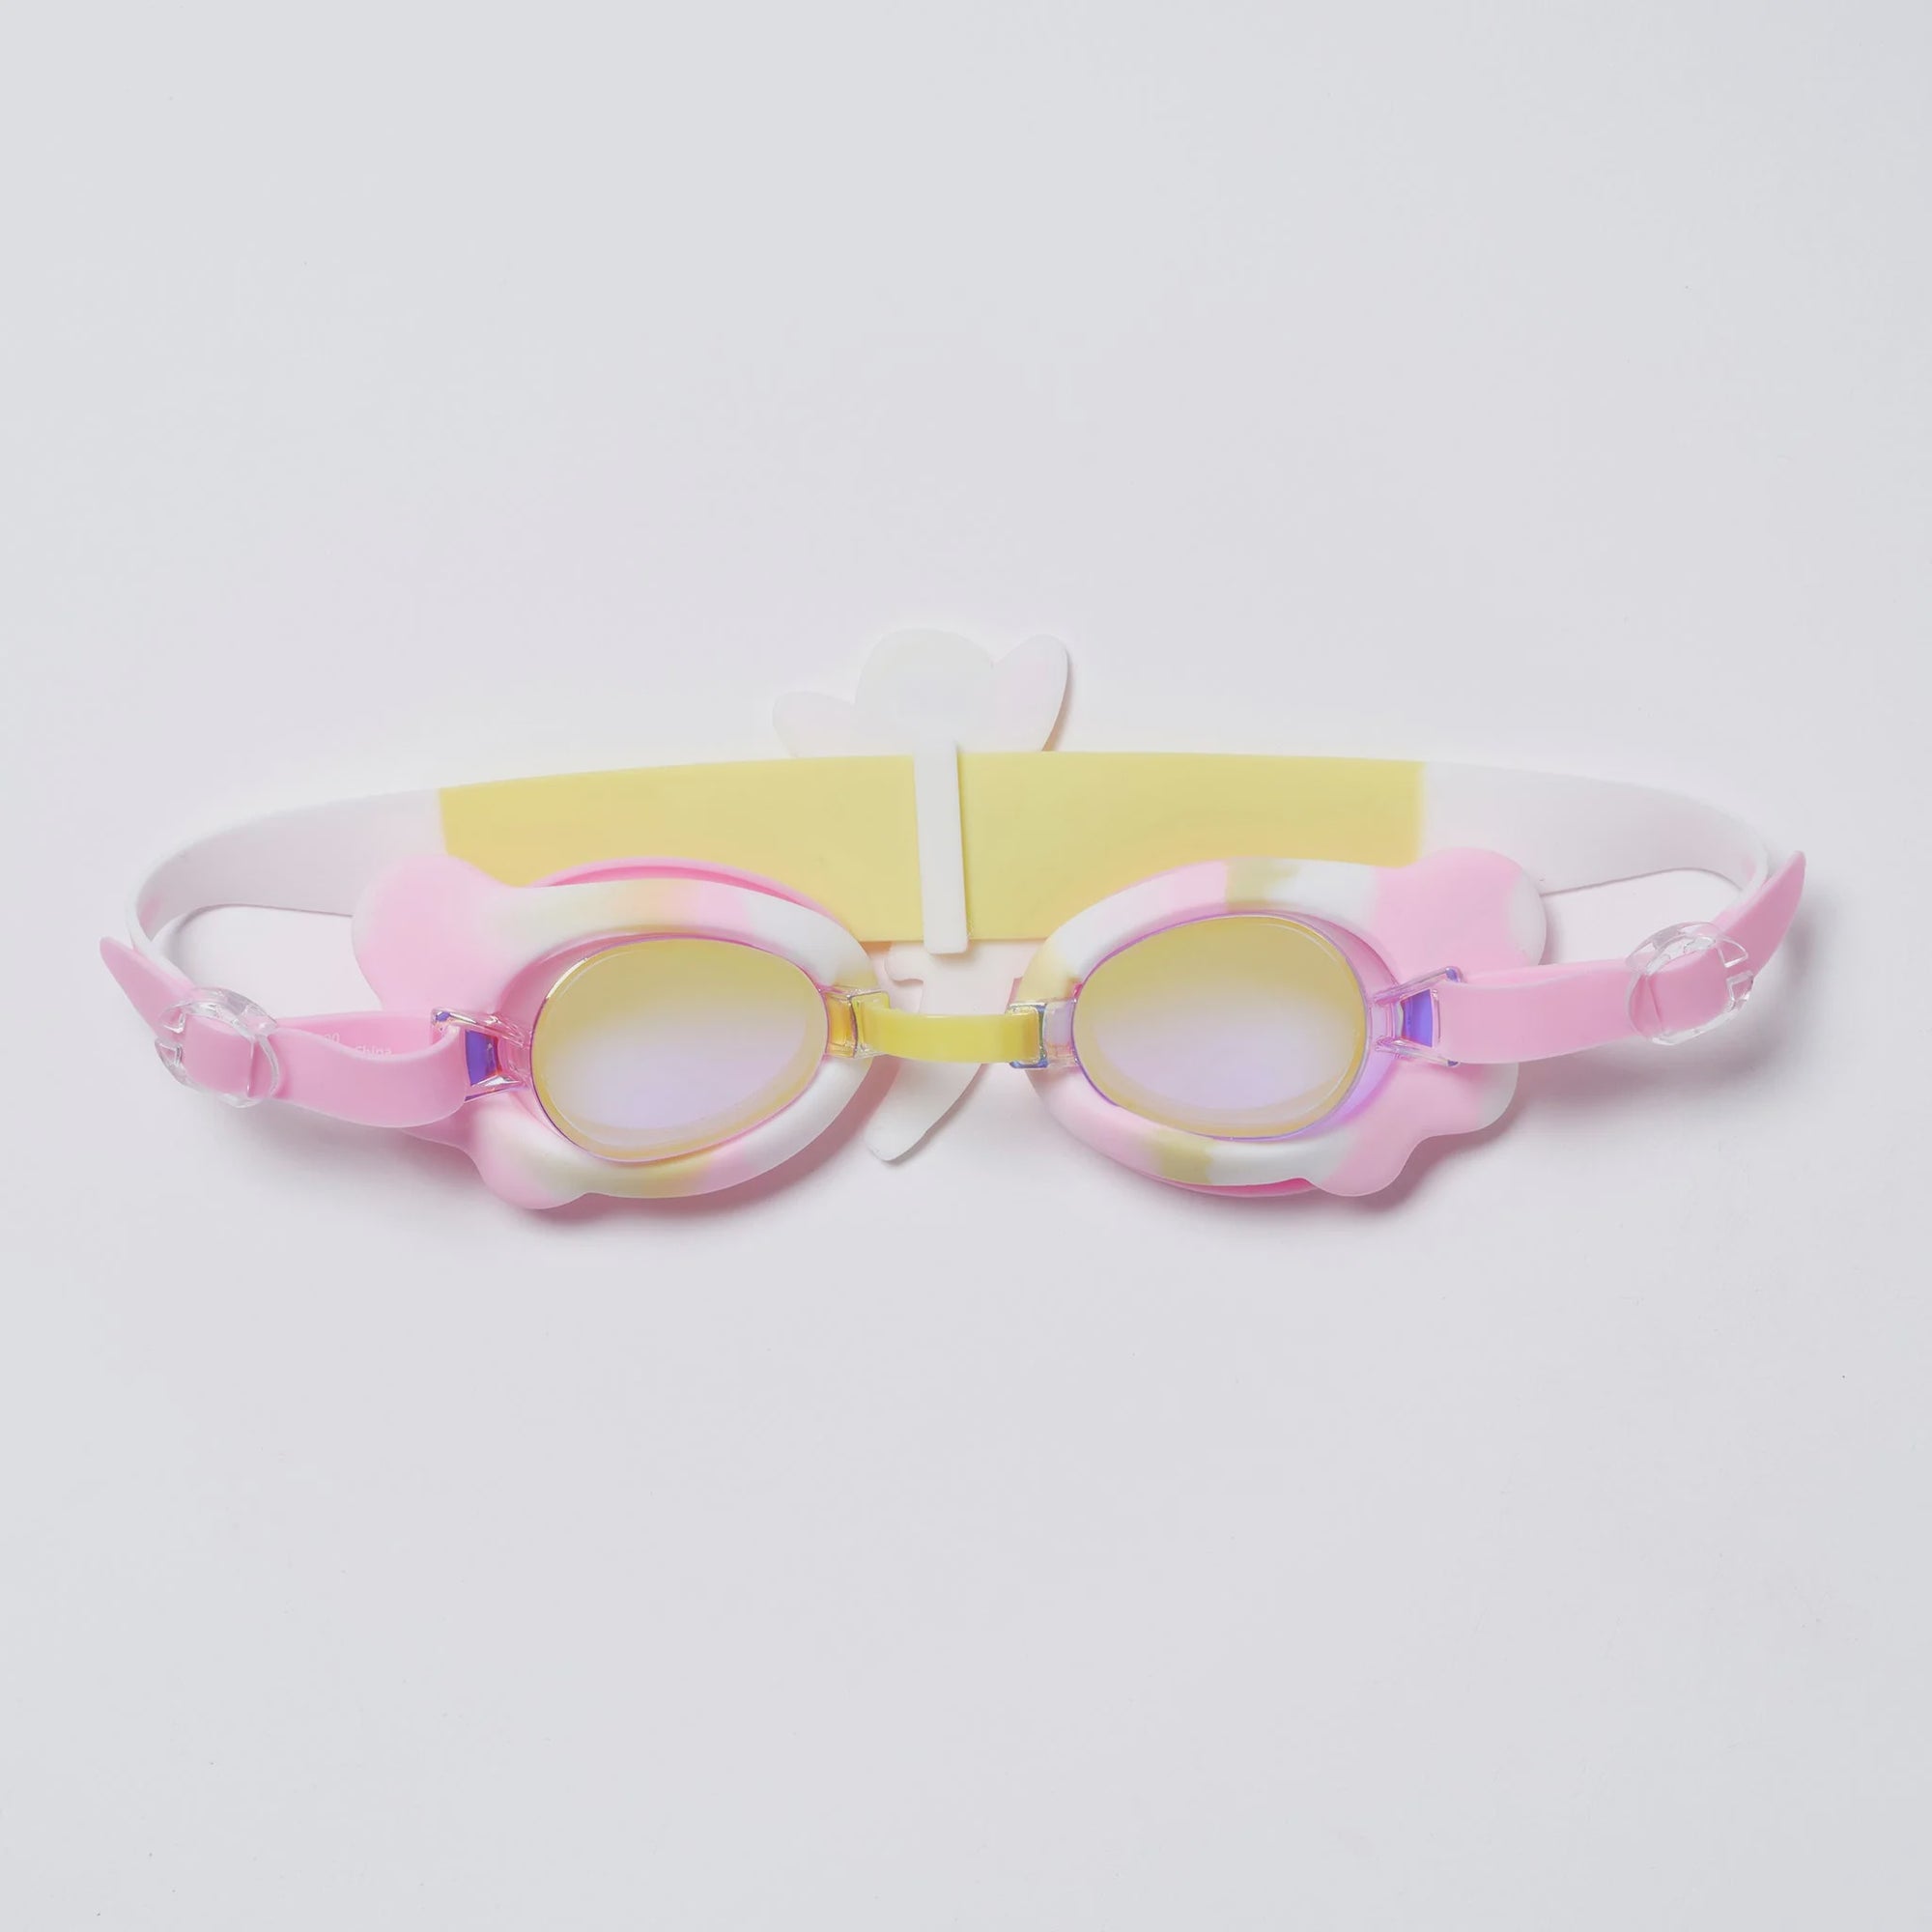 Mini Swim Goggles - Mima the Fairy Pink Lilac